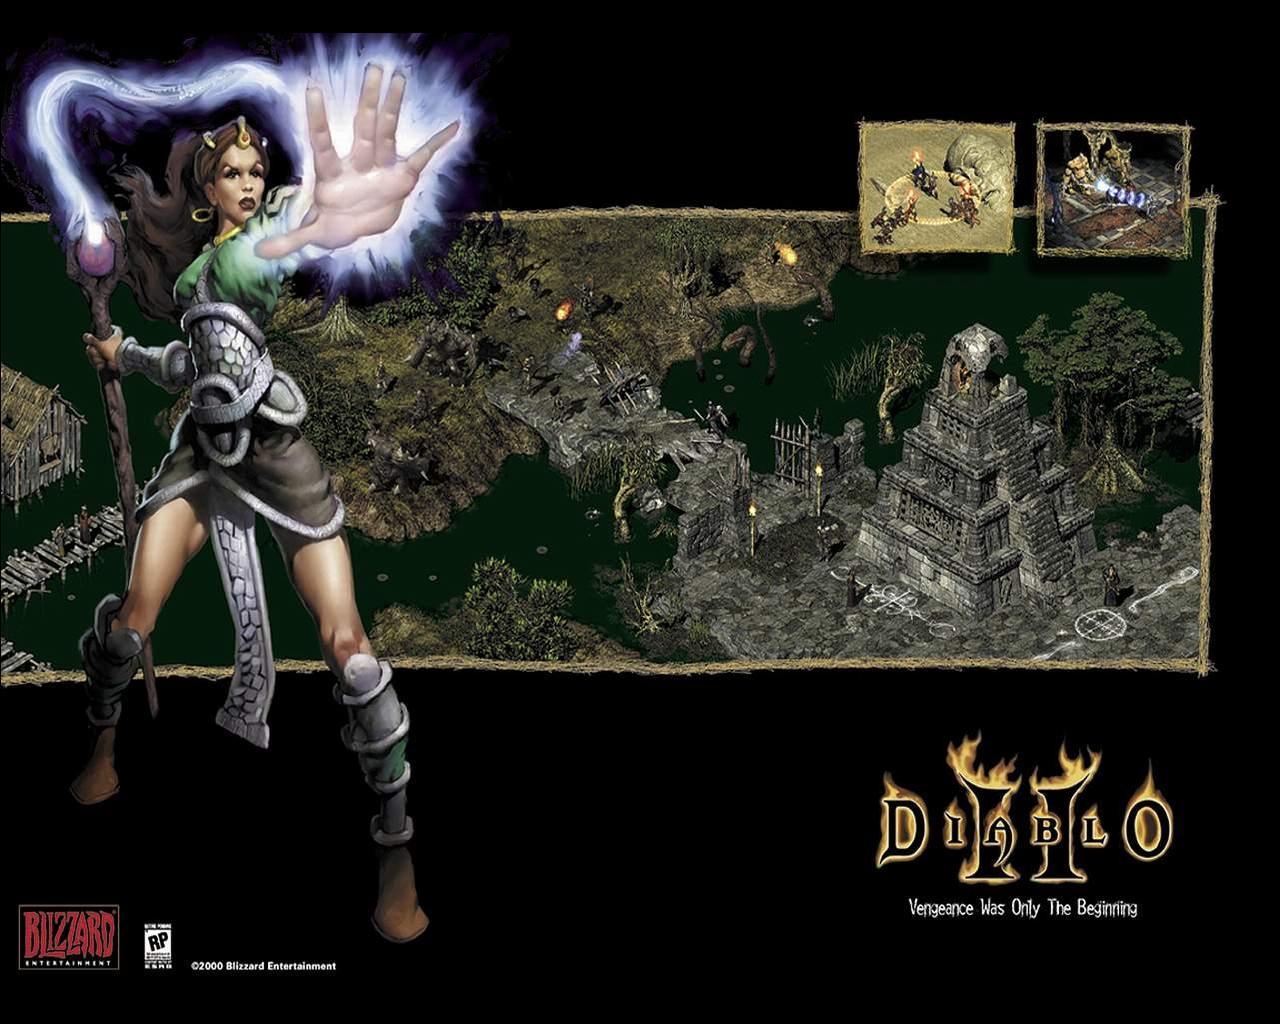 Wallpaper Diablo Diablo 2 Games